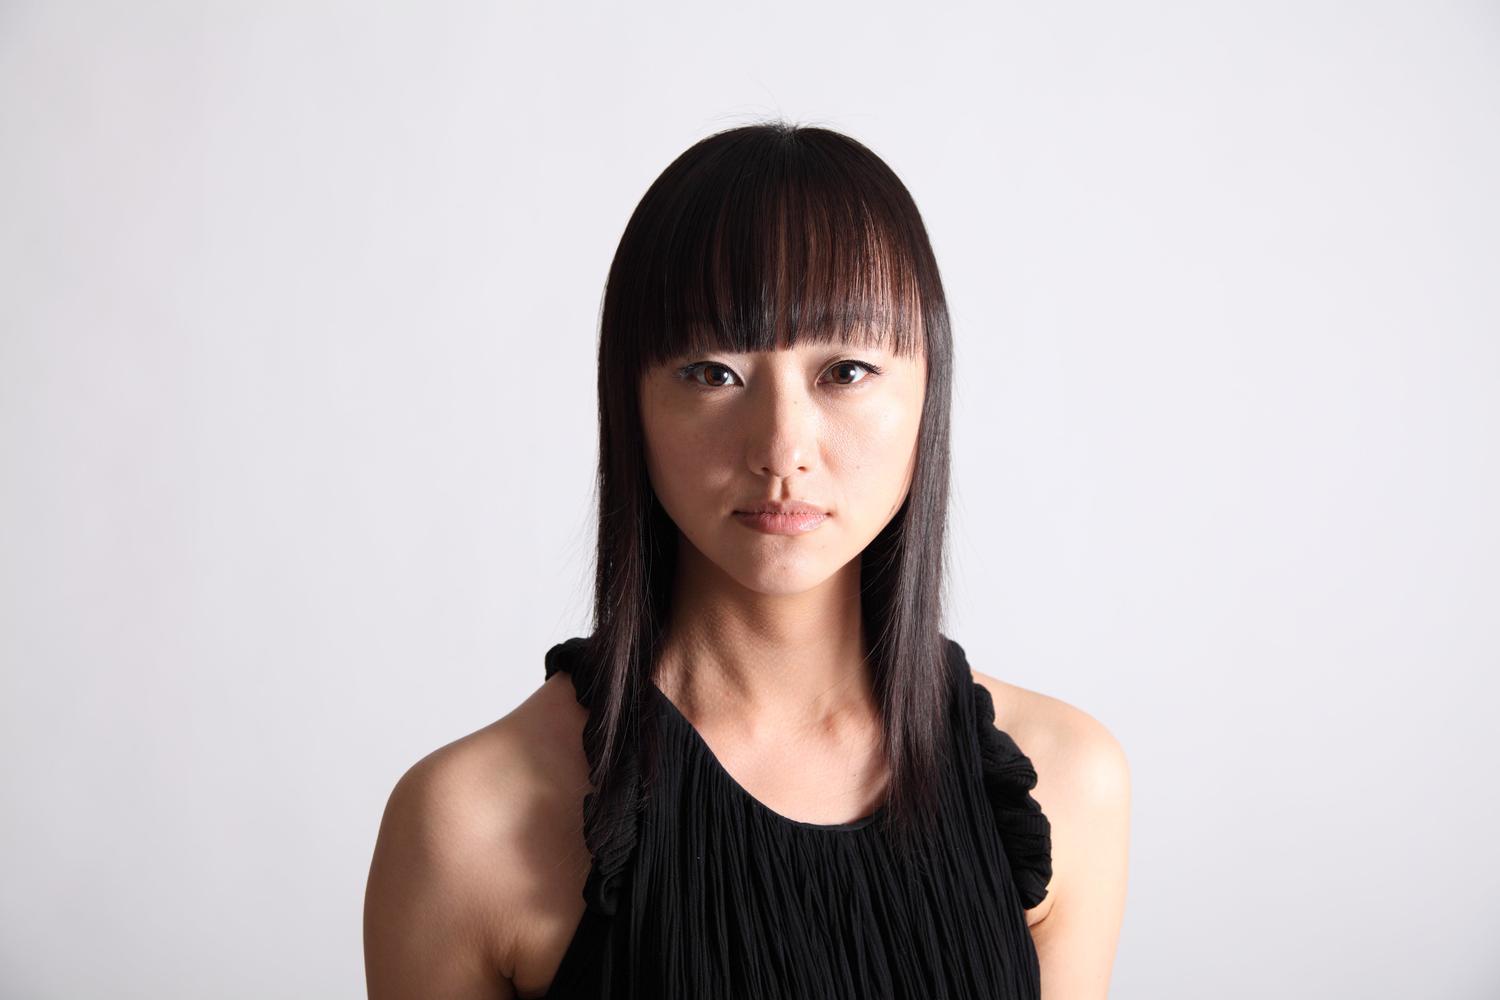 能声楽家・青木涼子 コンサートシリーズ「ヨーロッパ現代音楽の潮流と能声楽」 / No Singer Ryoko Aoki Concert Series